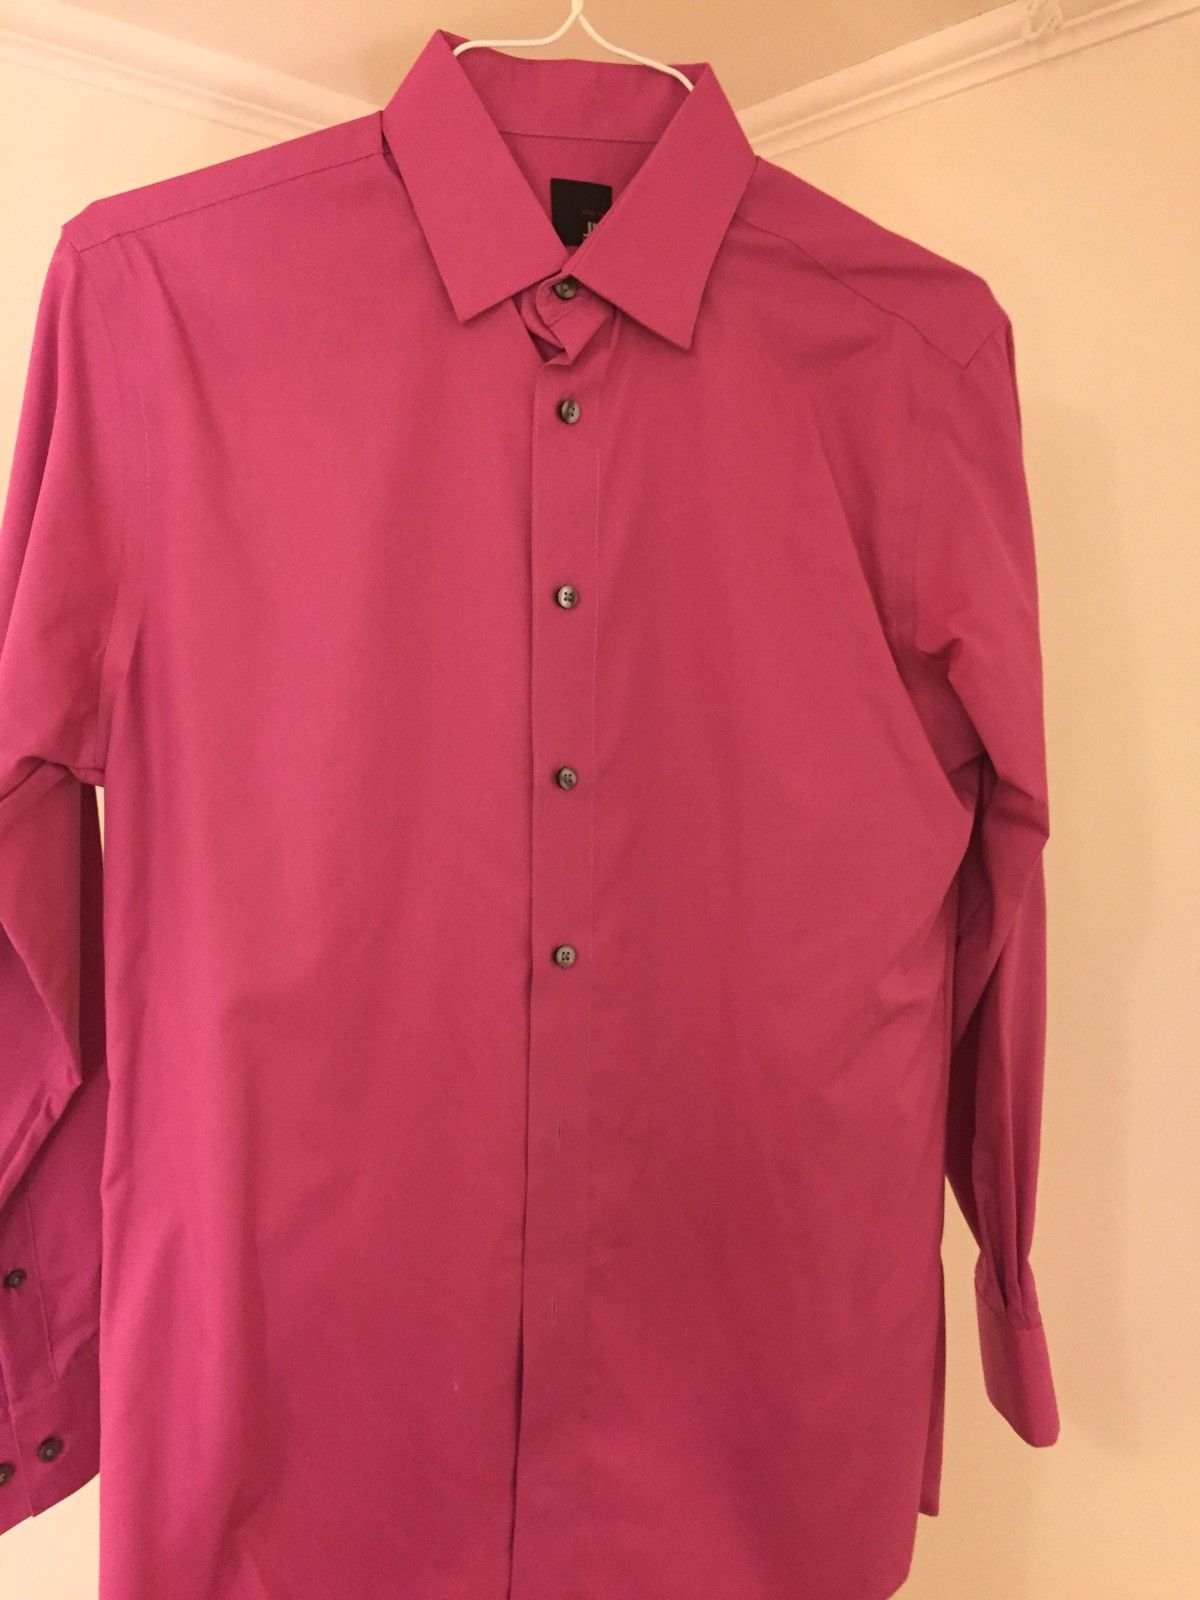 J. Ferrar Pink Button Up Shirt | Grailed